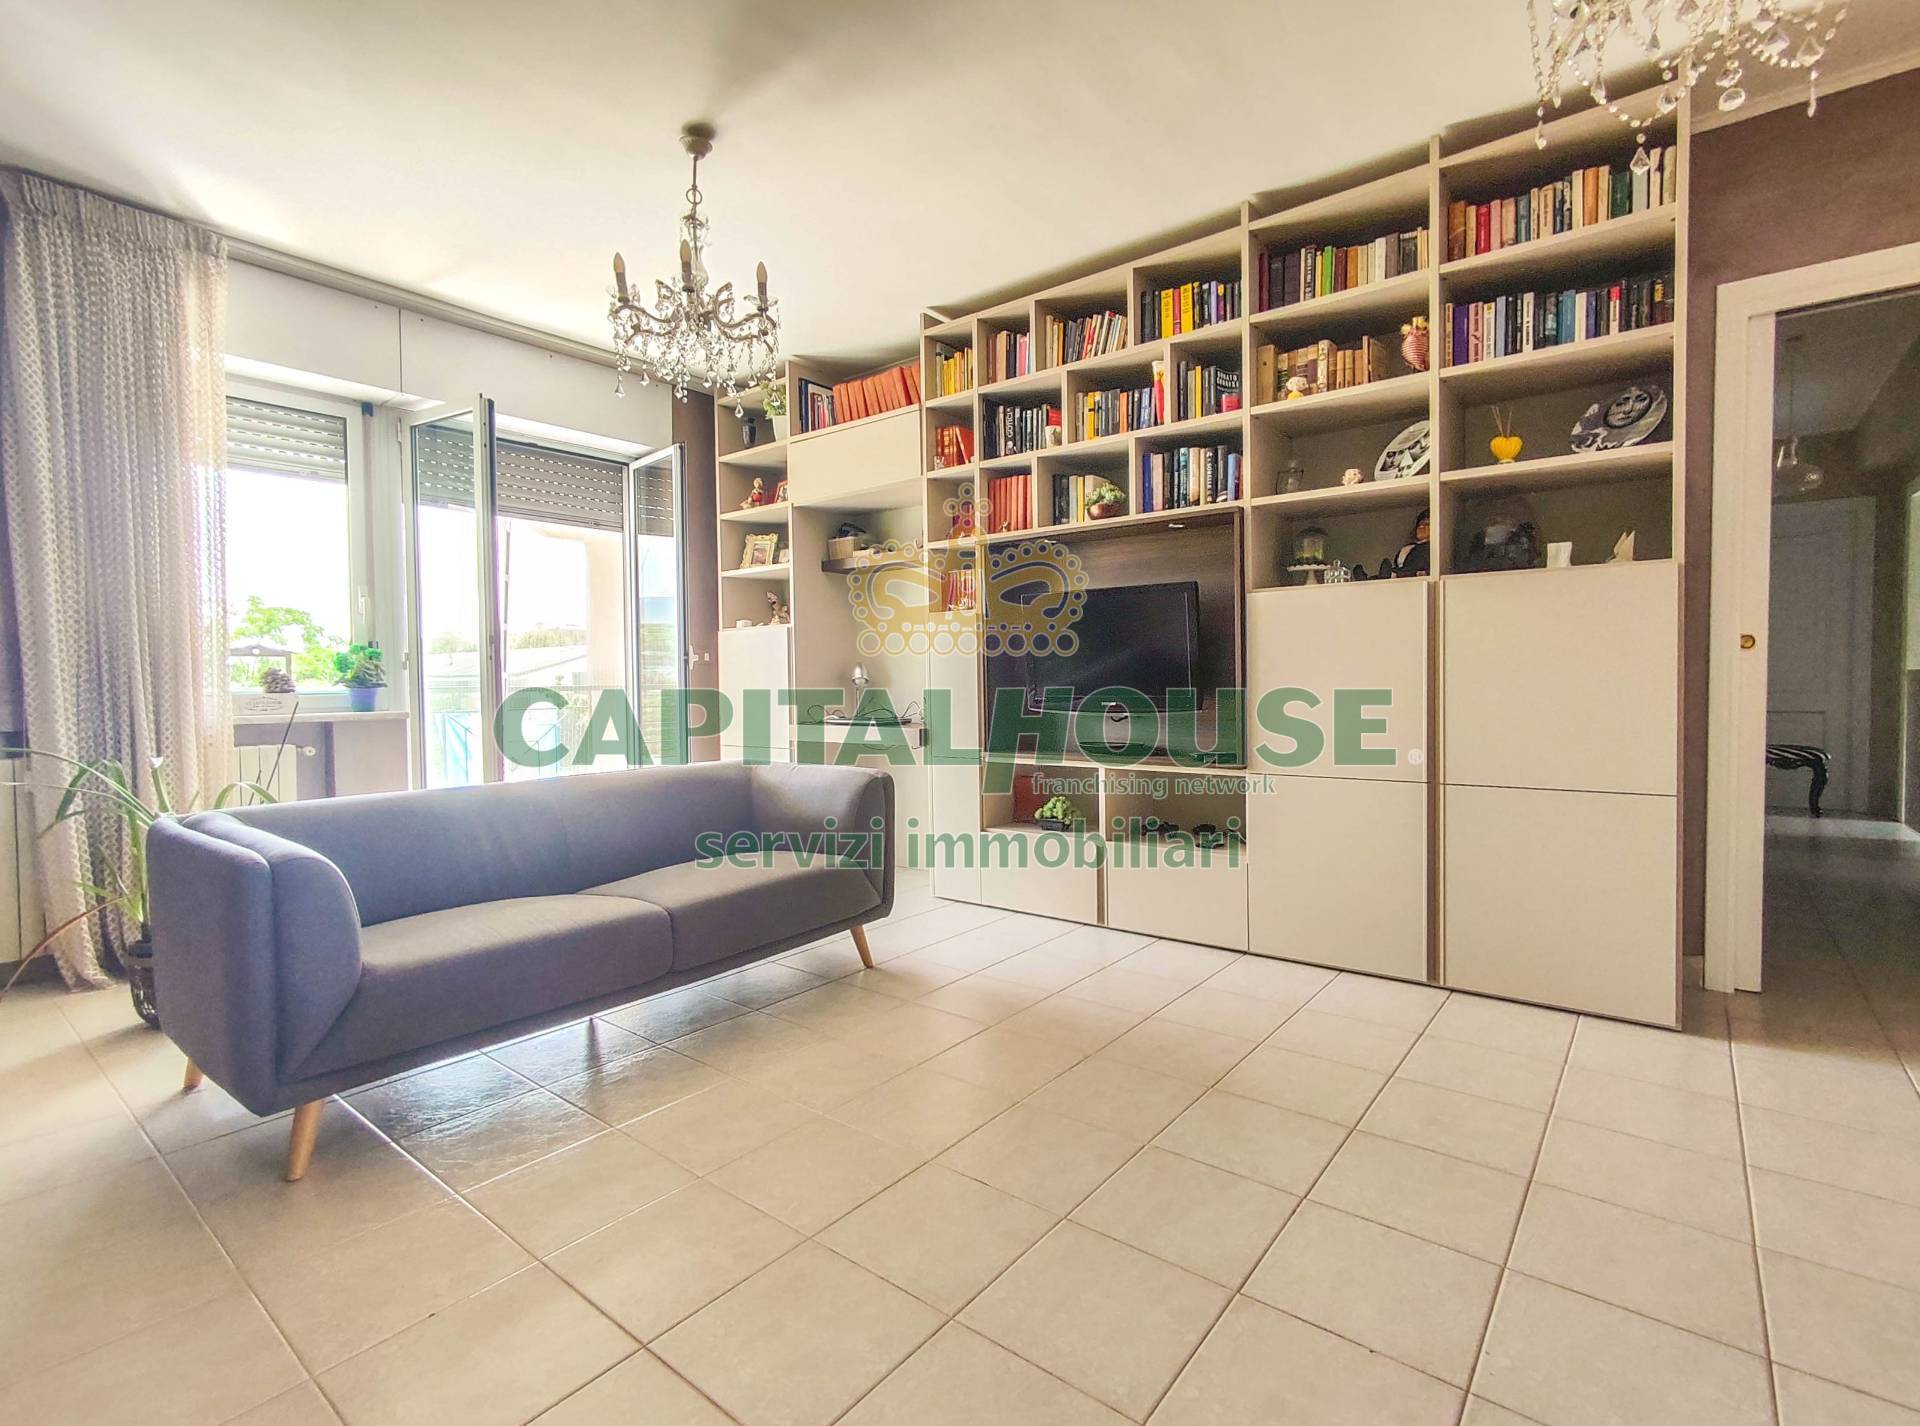 Appartamento in vendita a Santa Maria Capua Vetere, 4 locali, zona Località: Zonanuova, prezzo € 140.000 | PortaleAgenzieImmobiliari.it